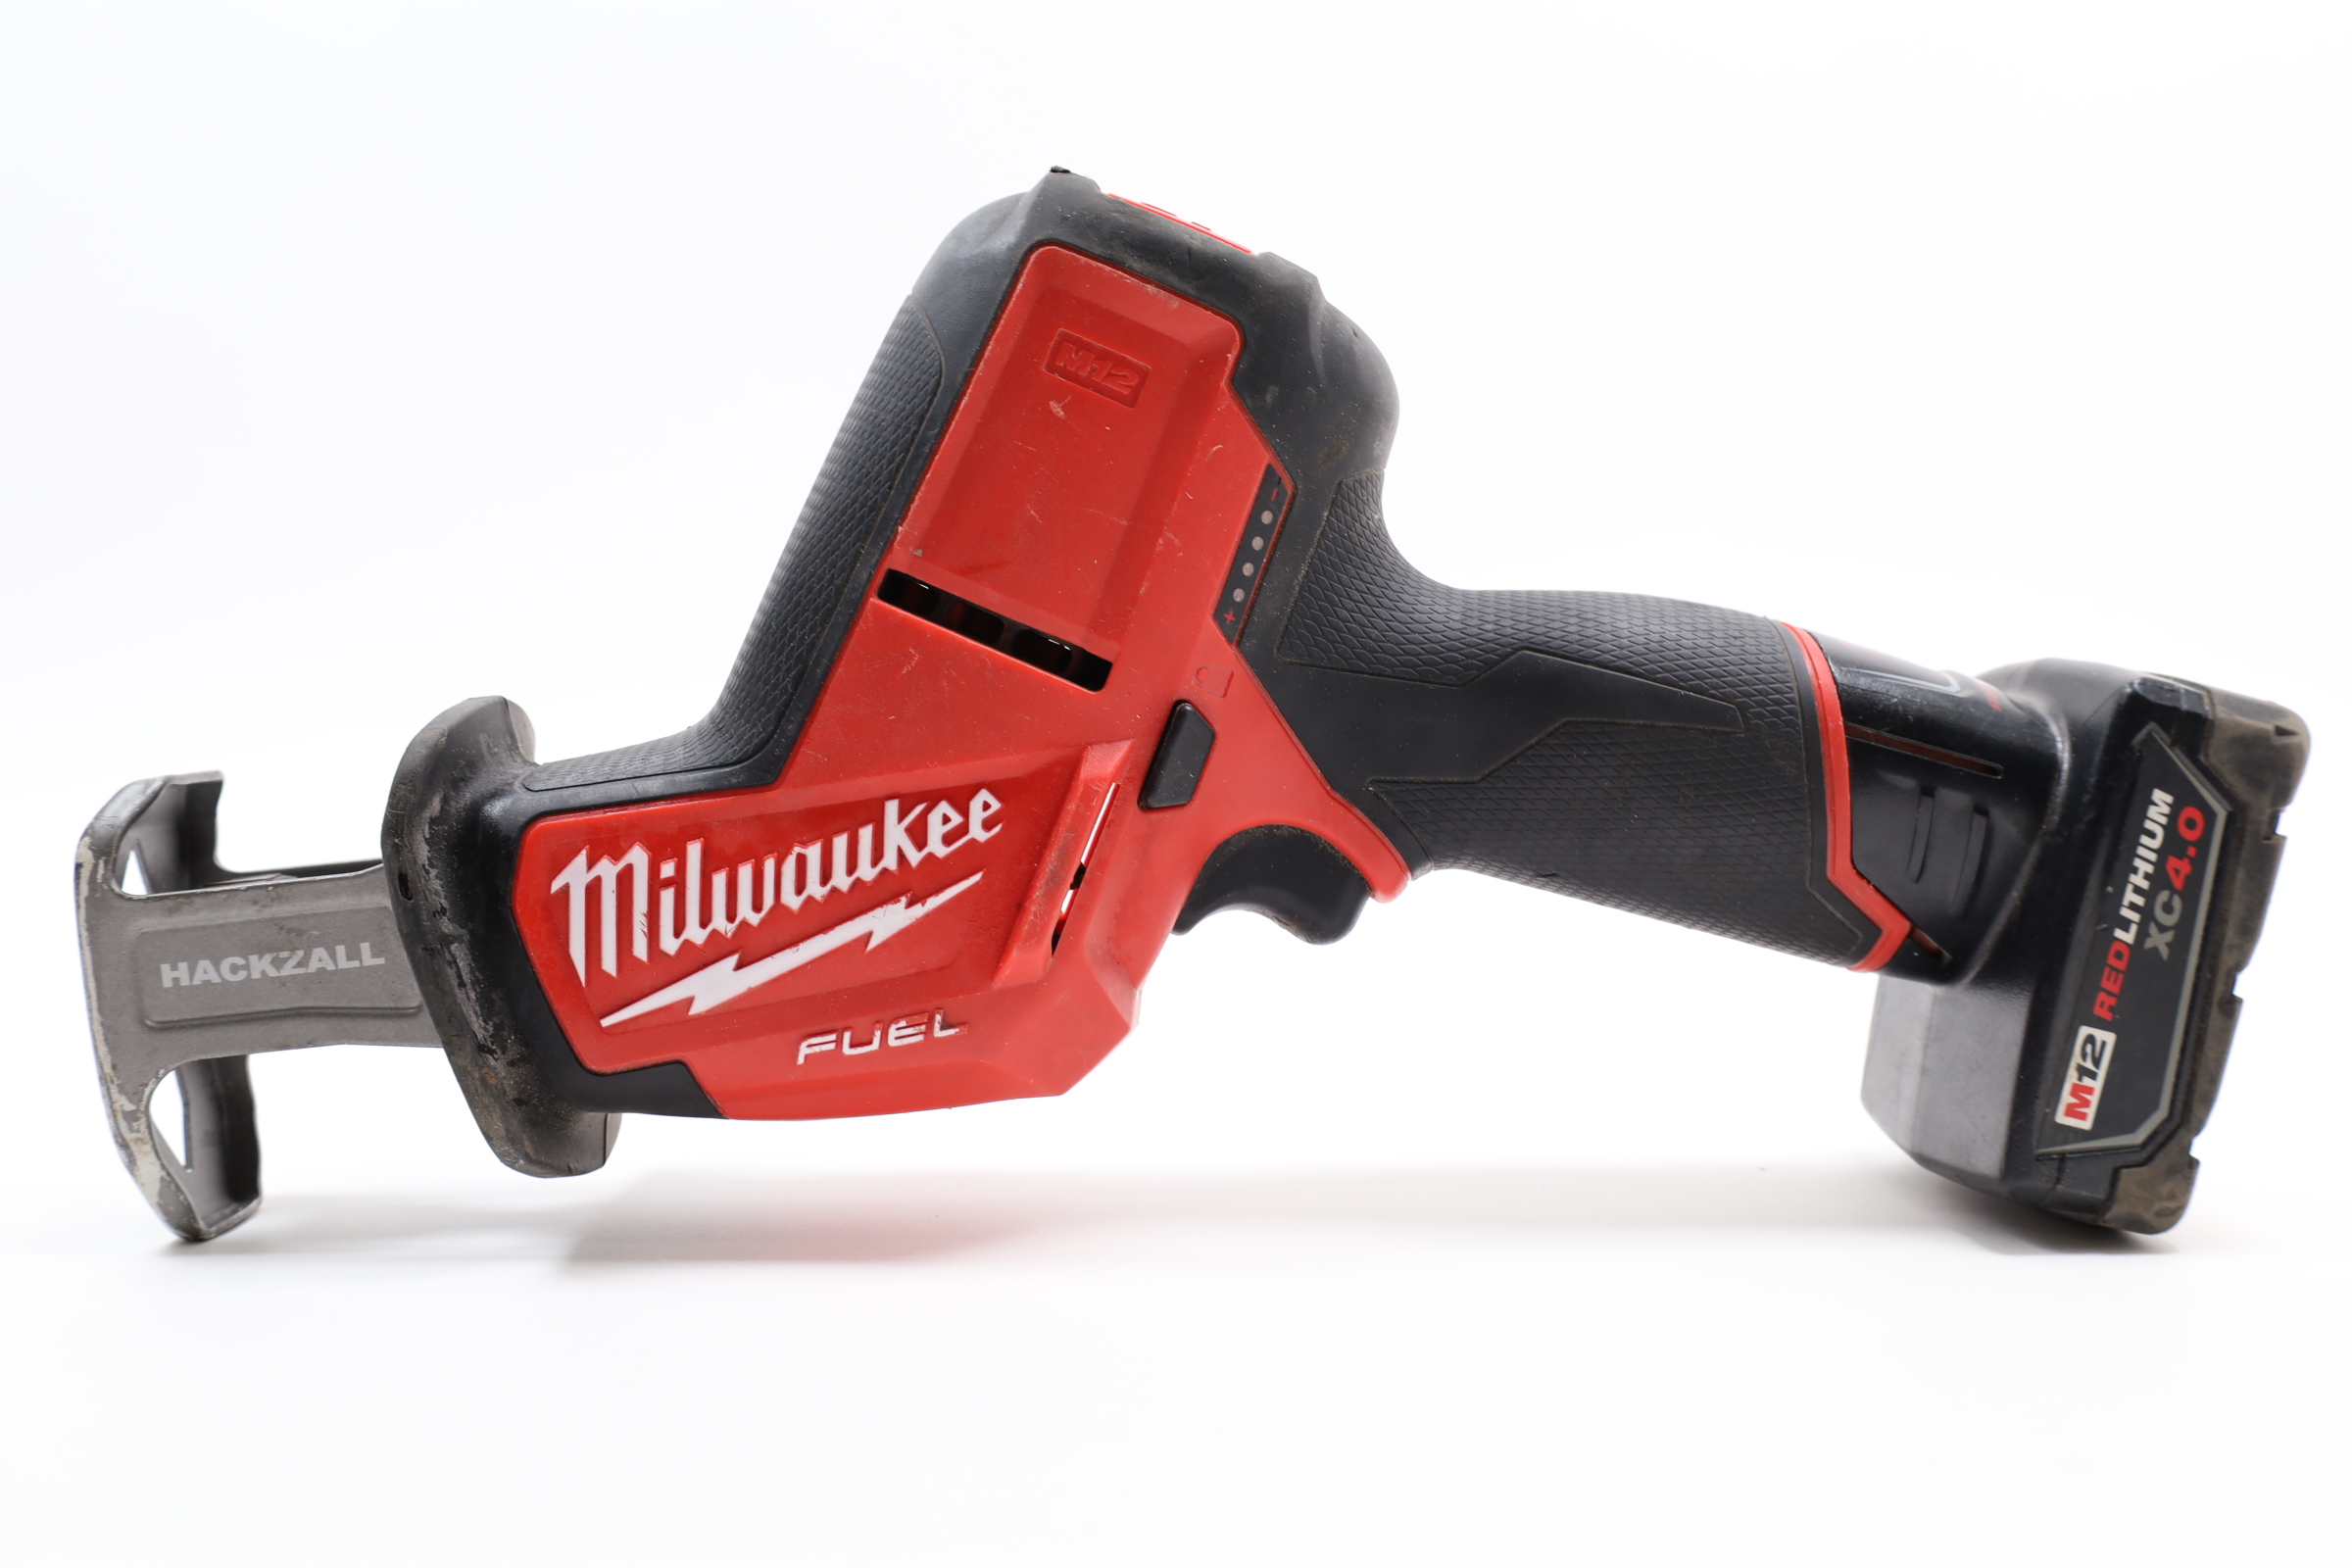 Milwaukee 2520-20 M12 FUEL 12V Brushless Cordless Reciprocating Saw